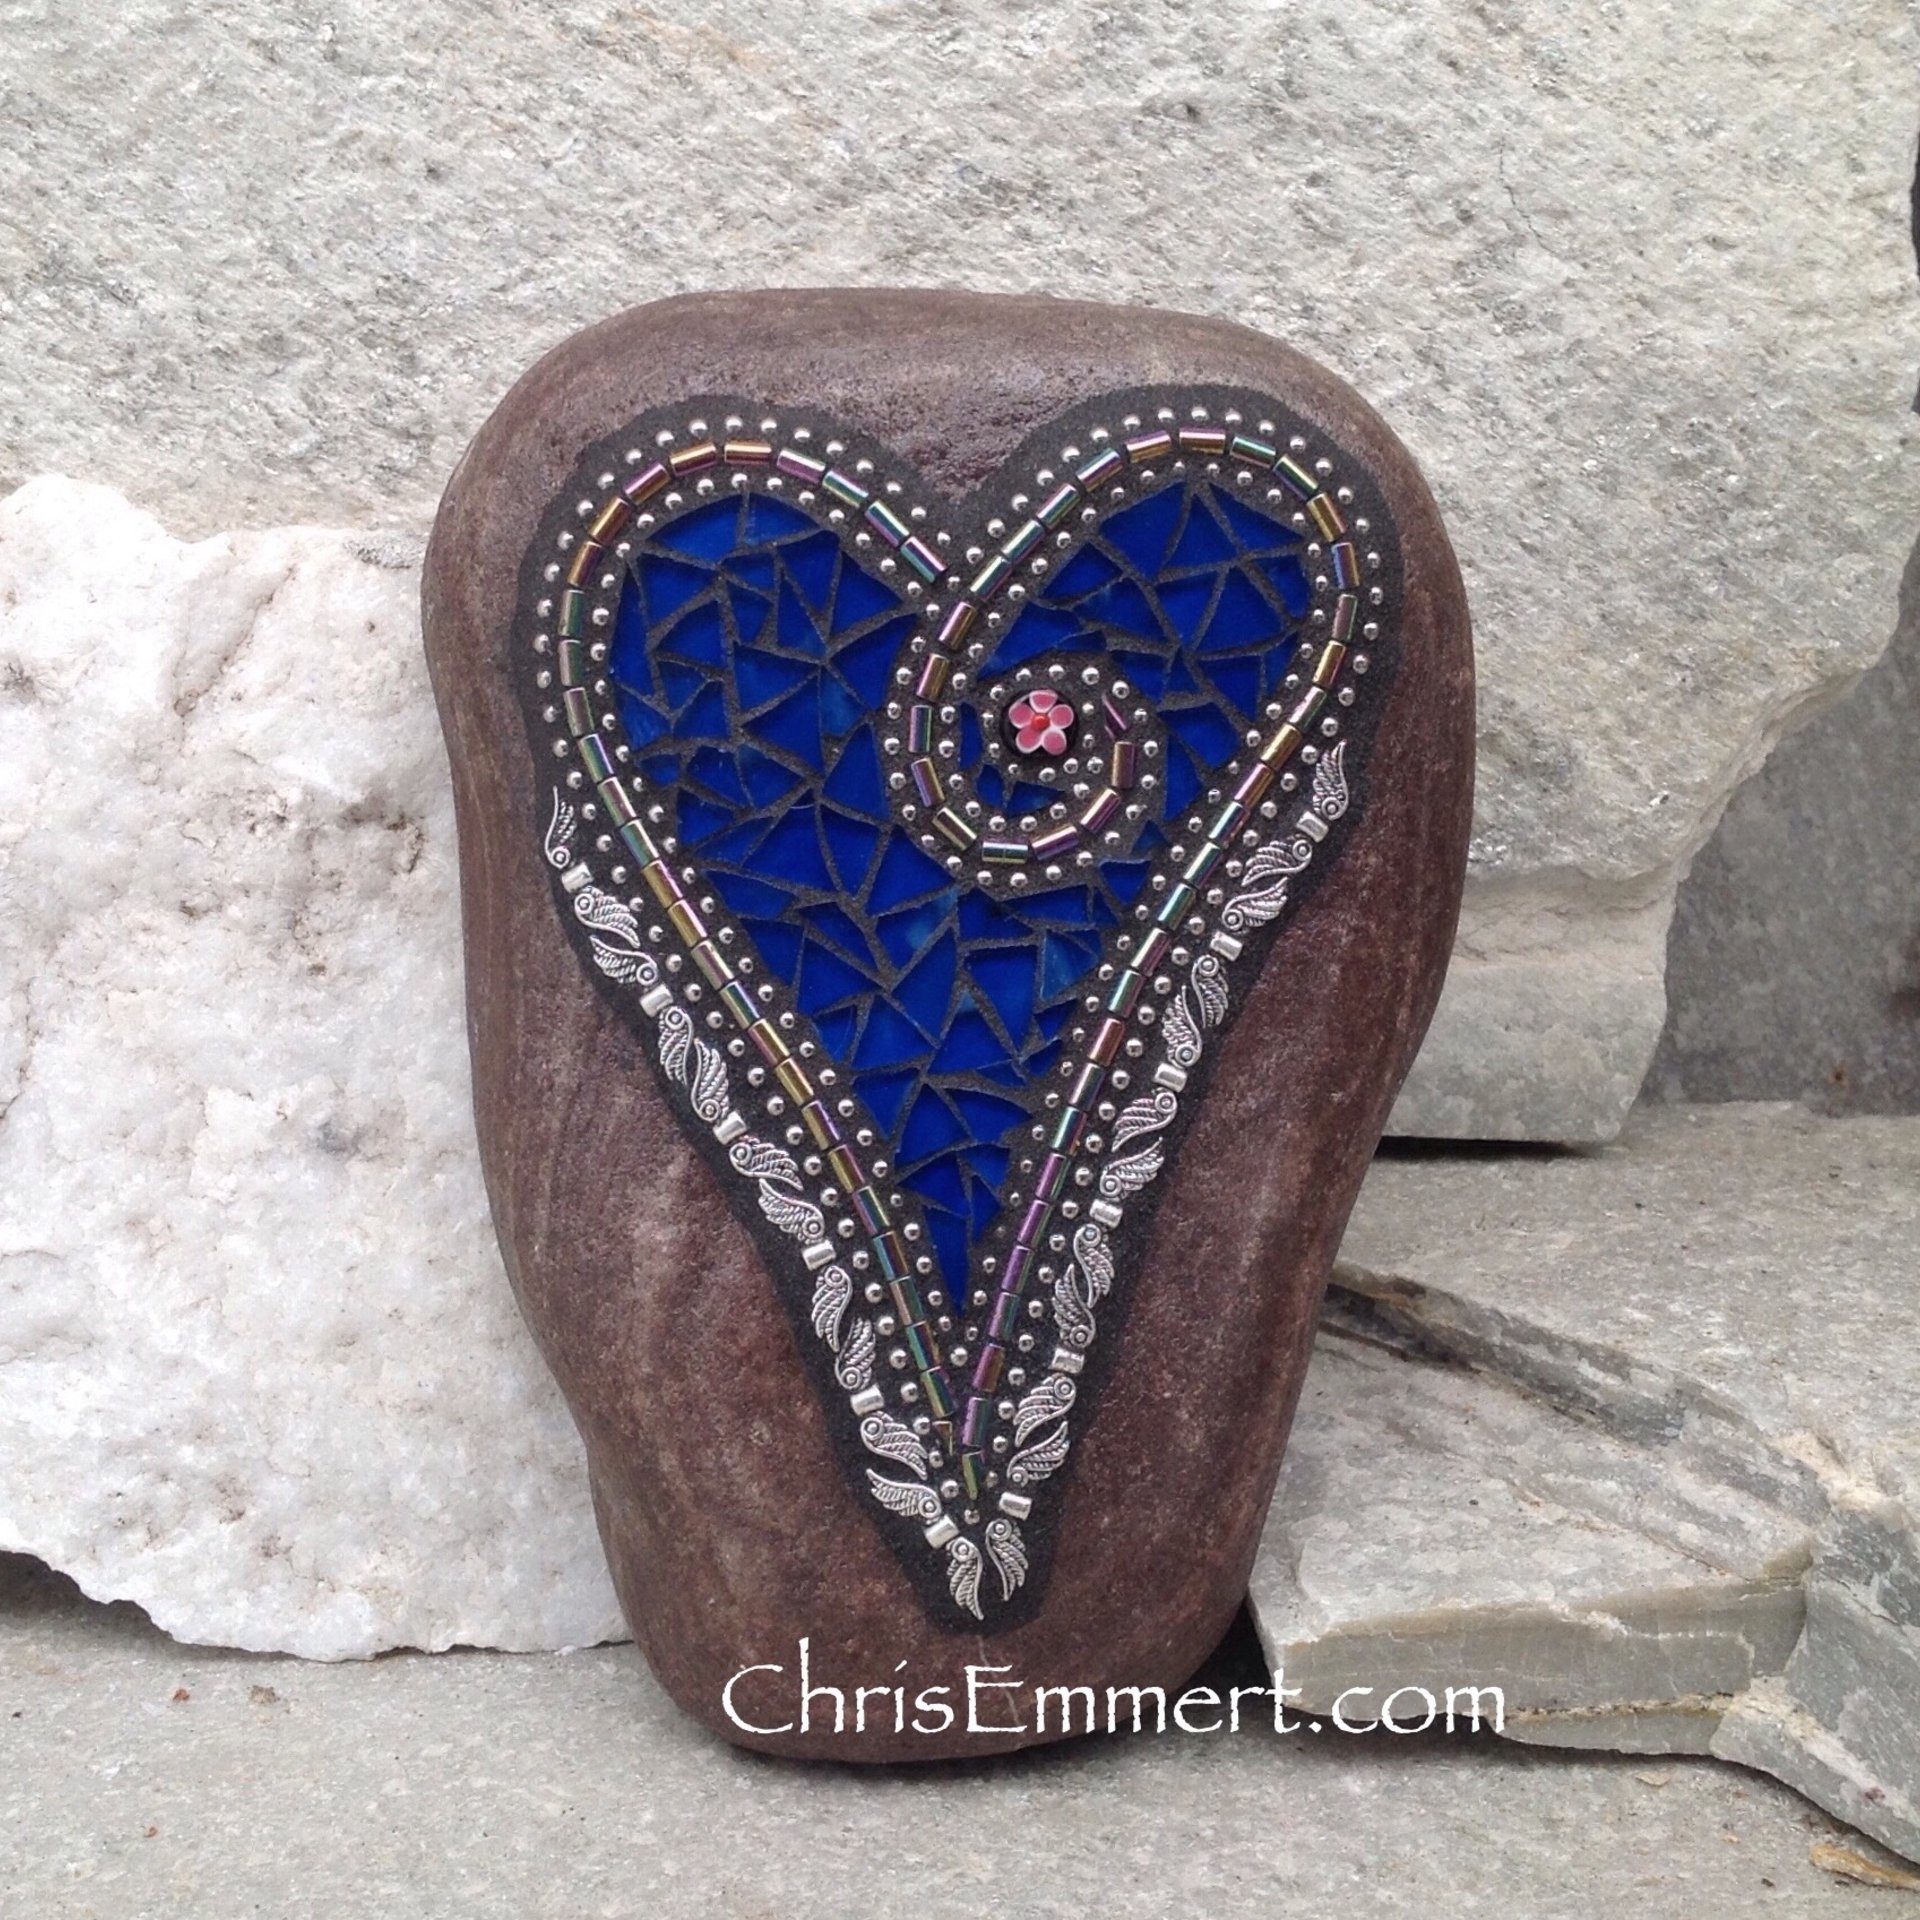 Cobalt Blue Angel Wing Heart, Garden Stone, Mosaic, Garden Decor